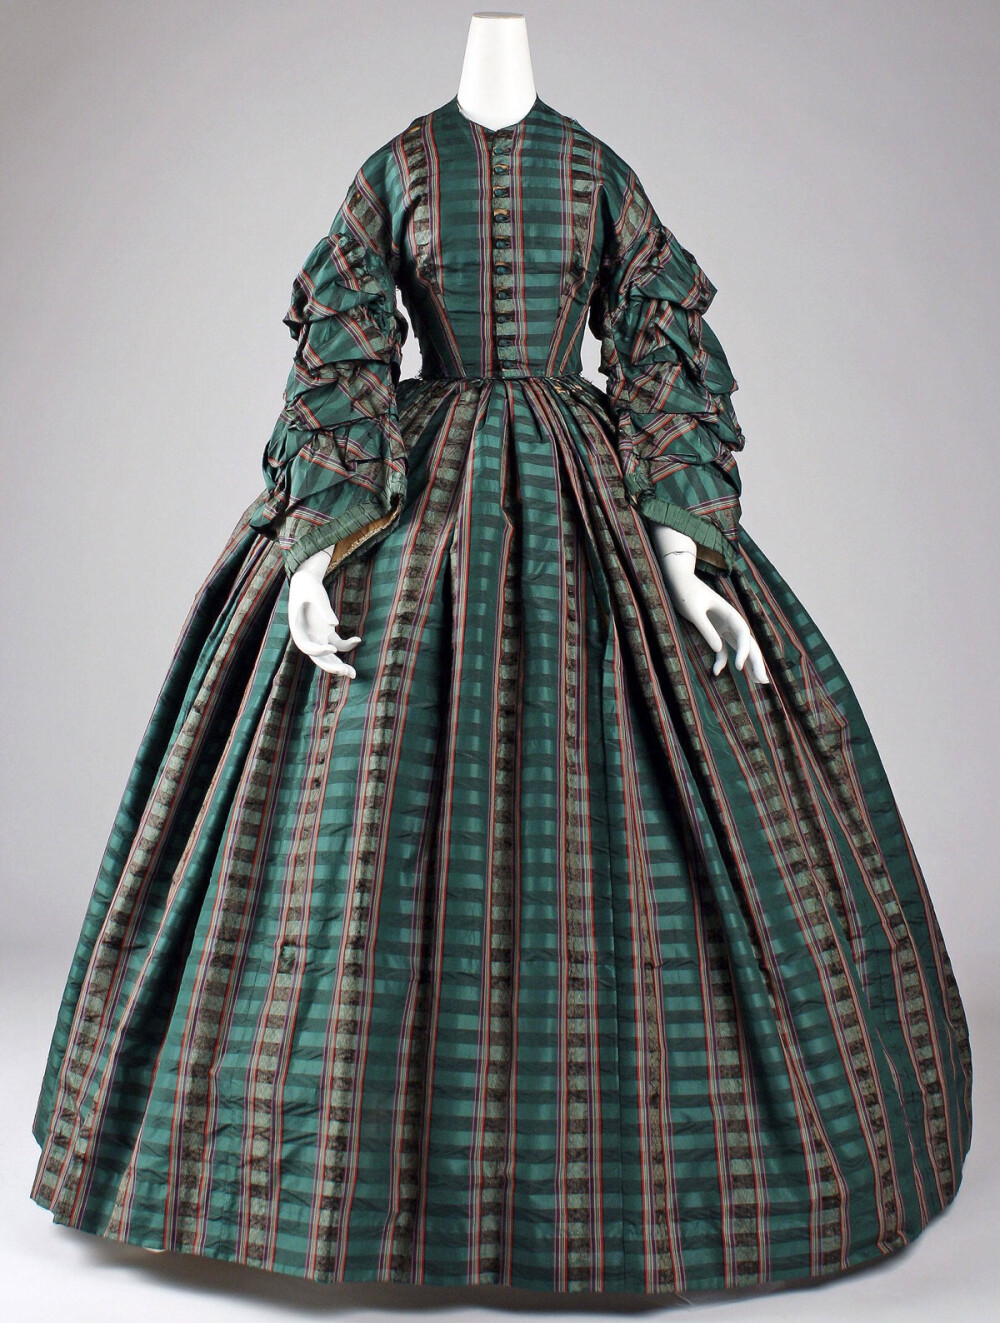 日装，1860s，米国，藏于大都会艺术博物馆。格子花纹克里诺林裙，这配色让我想到了某些爬行动物·····